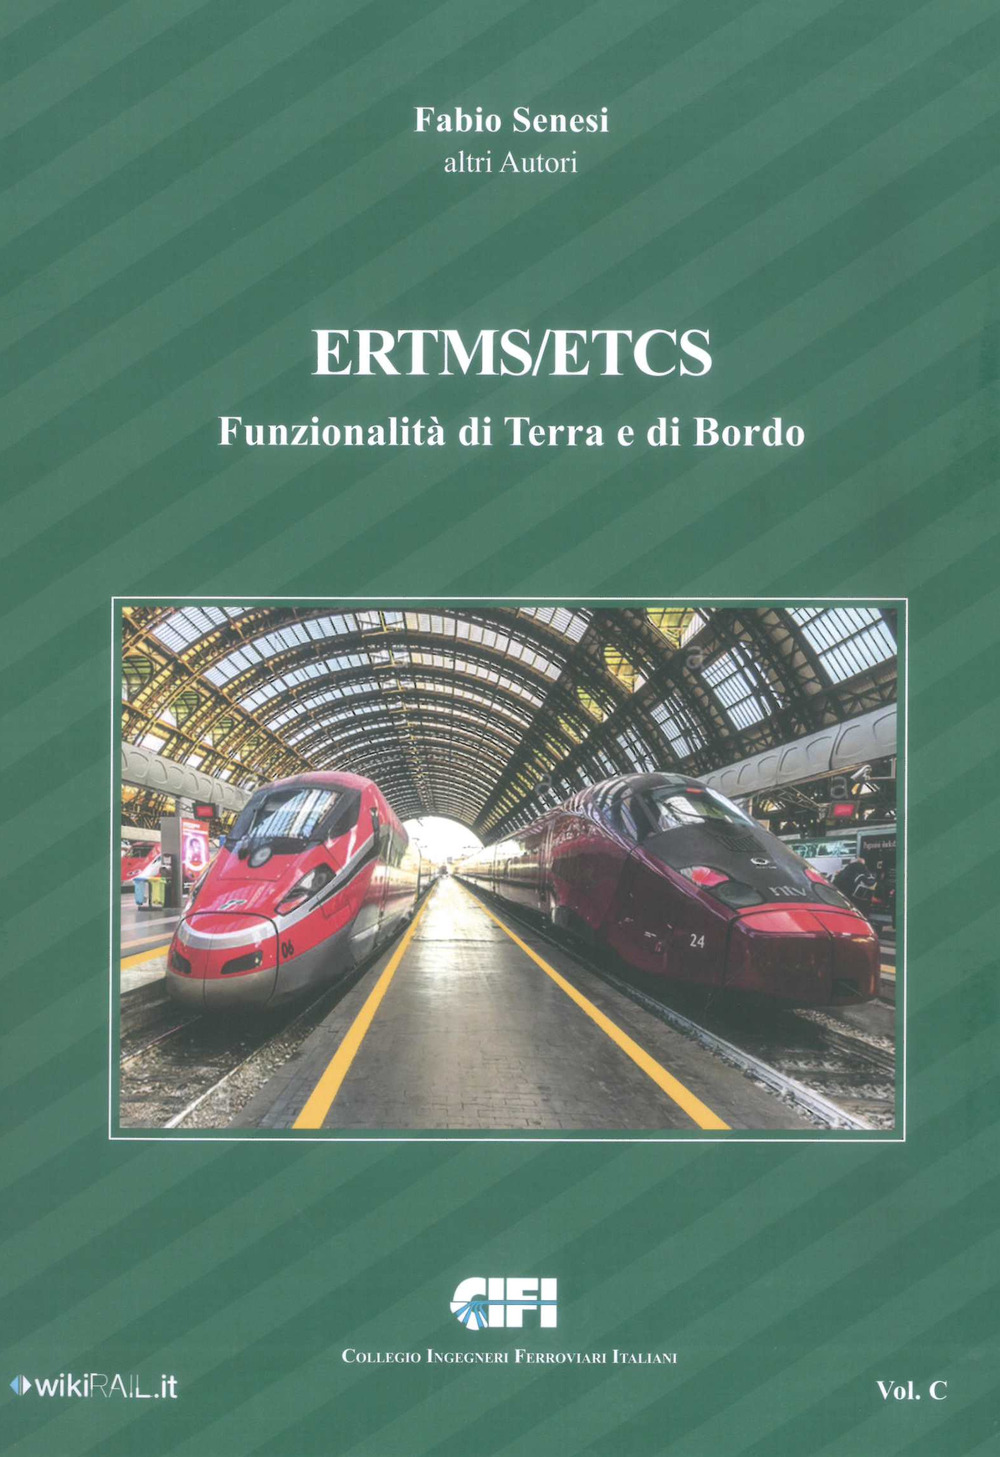 Libri Fabio Senesi - ERTMS/ETCS Vol 0C NUOVO SIGILLATO, EDIZIONE DEL 28/02/2022 SUBITO DISPONIBILE